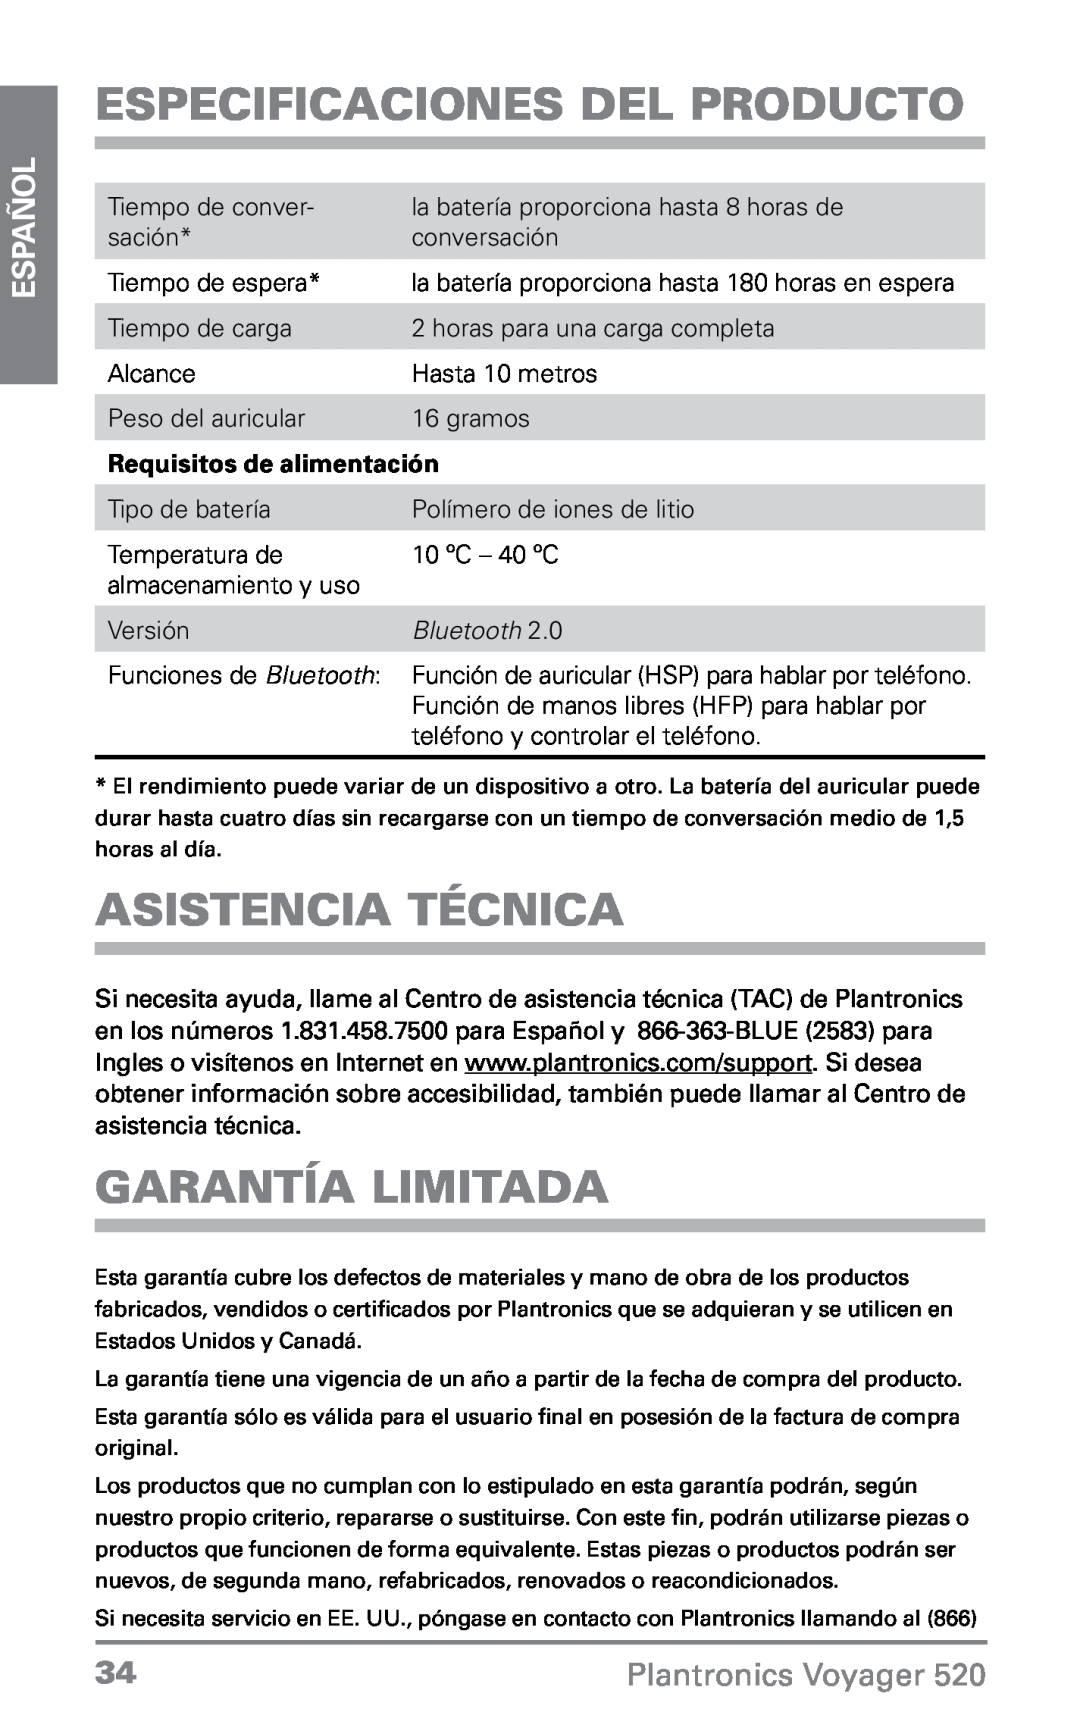 Plantronics 520 Especificaciones del Producto, Asistencia técnica, Garantía limitada, Requisitos de alimentación, Español 